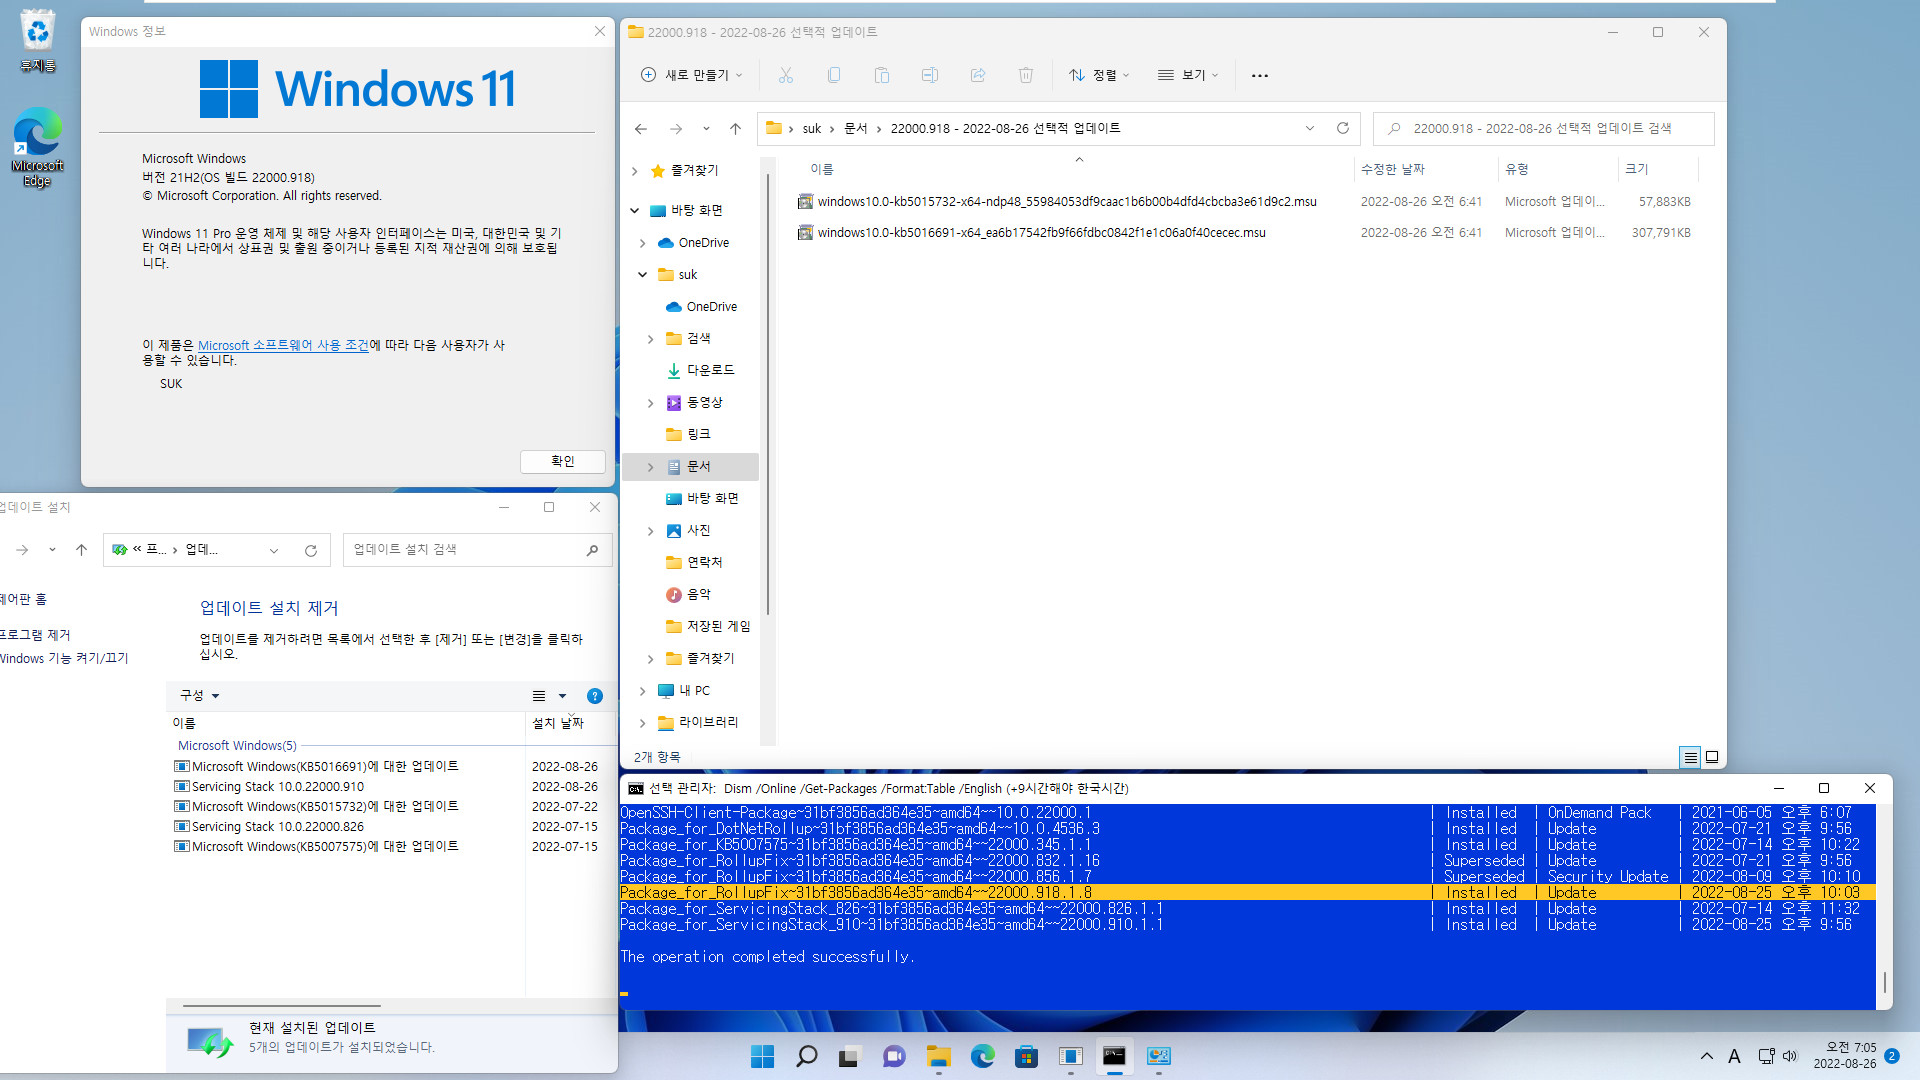 2022-08-26 금요일 - 선택적 업데이트 - Windows 11 버전 21H2, 빌드 22000.918 - 누적 업데이트 KB5016691 - vmware에 설치 - 서비스 스택 업데이트 SSU-22000.910는 누적 업데이트 msu 파일에 포함되어 있습니다 2022-08-26_070530.jpg